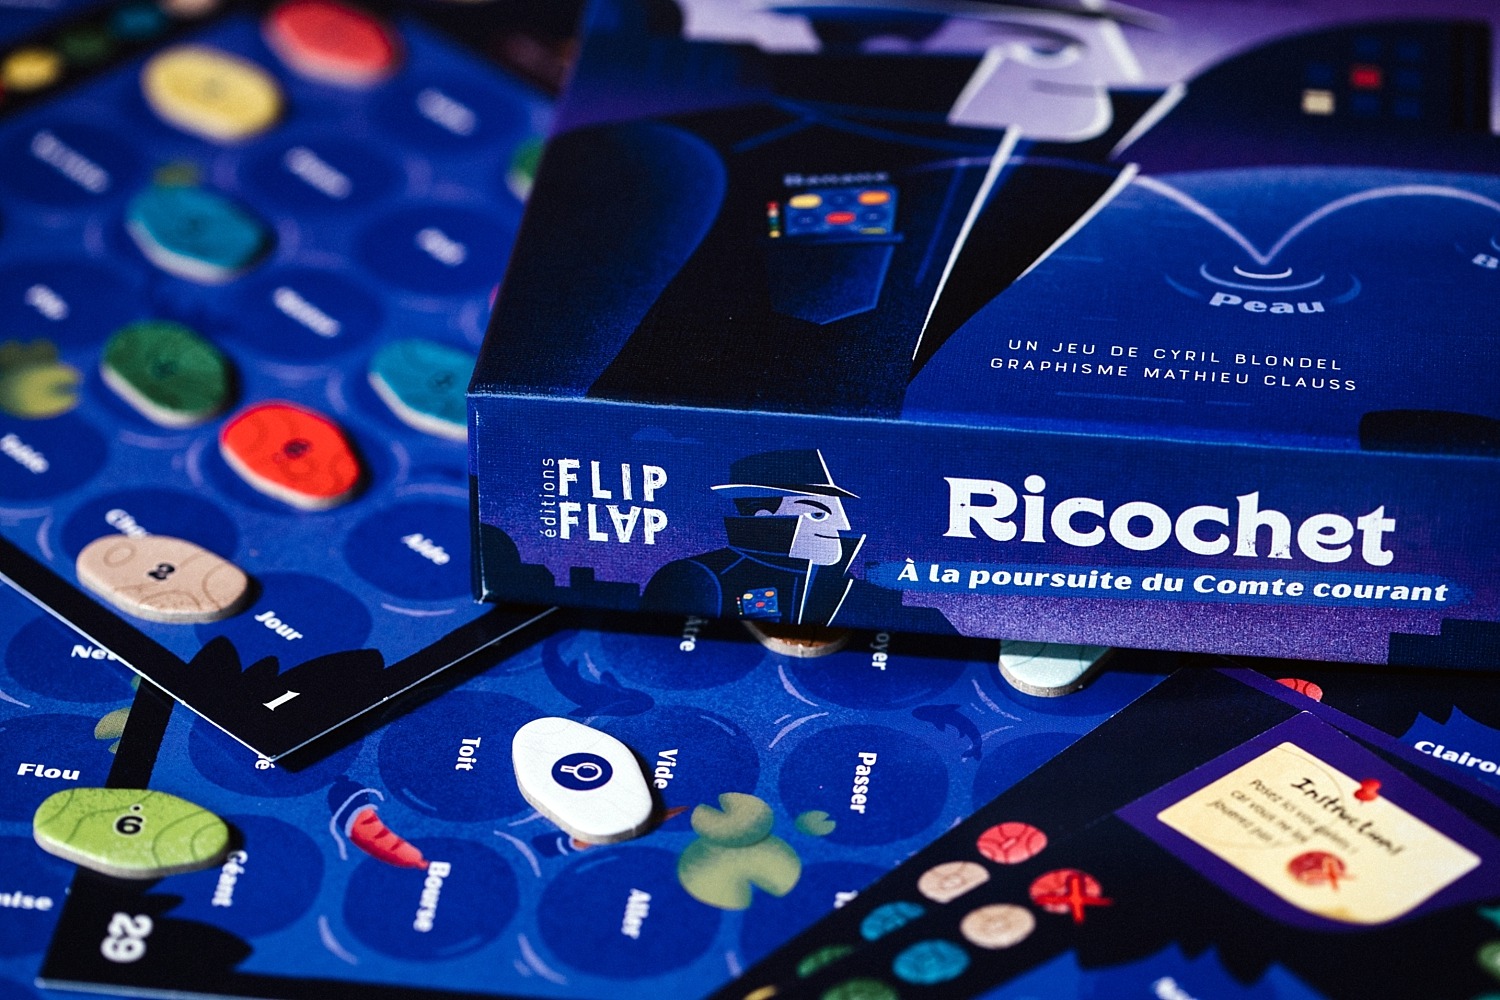 Ricochet flip flap